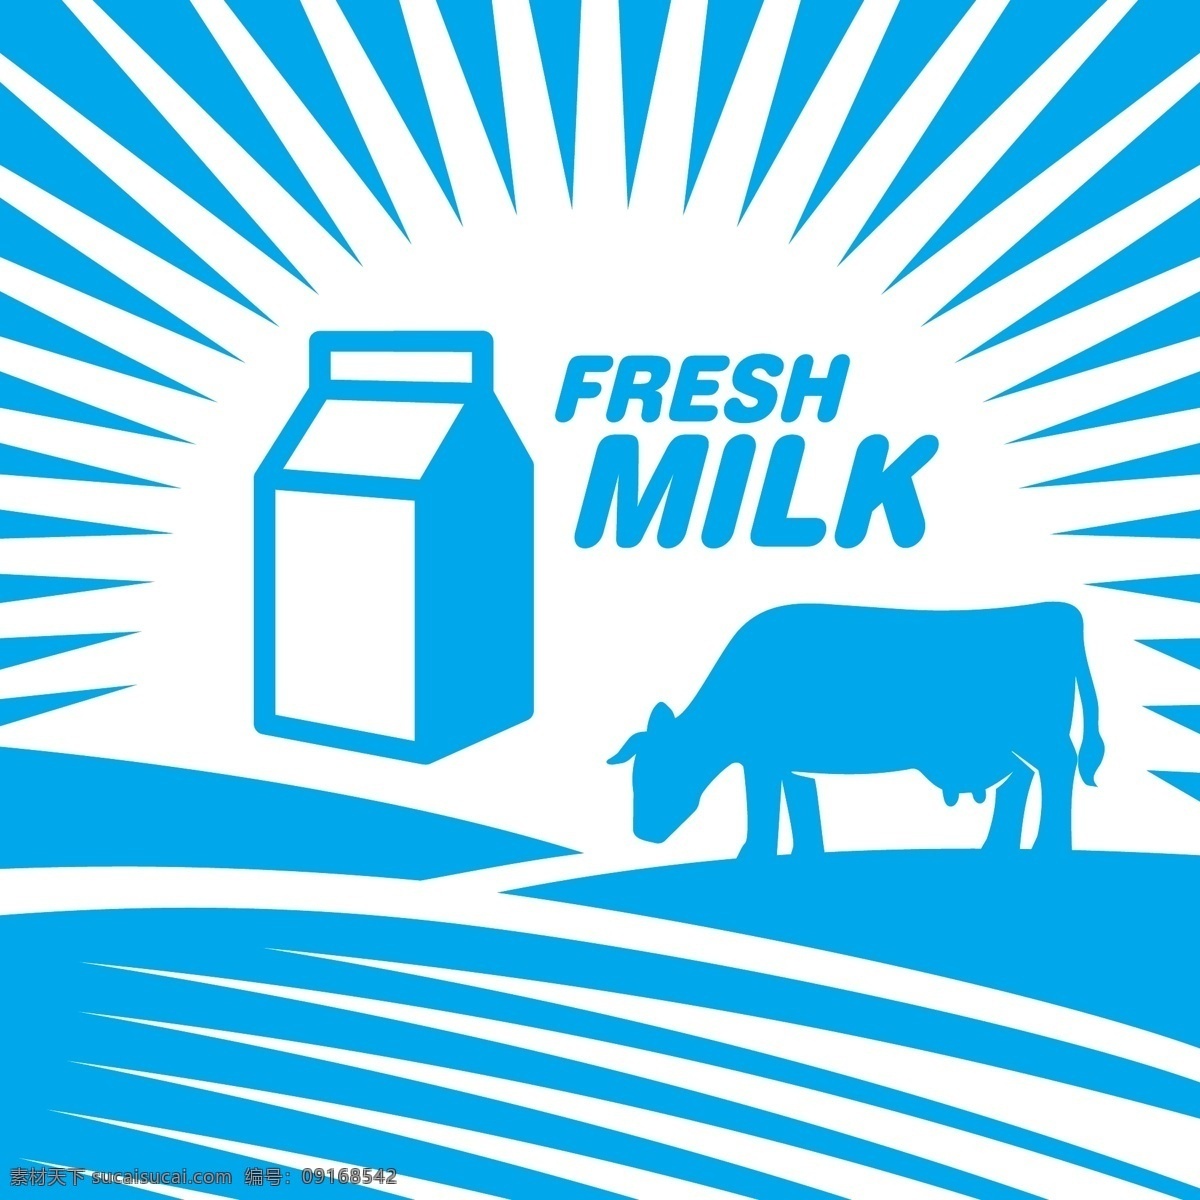 牛奶设计 牛奶 牛奶图标 牛奶标签 牛奶商标 牛奶logo 牛奶标志 抽象设计 卡通背景 矢量设计 卡通设计 艺术设计 餐饮美食 生活百科